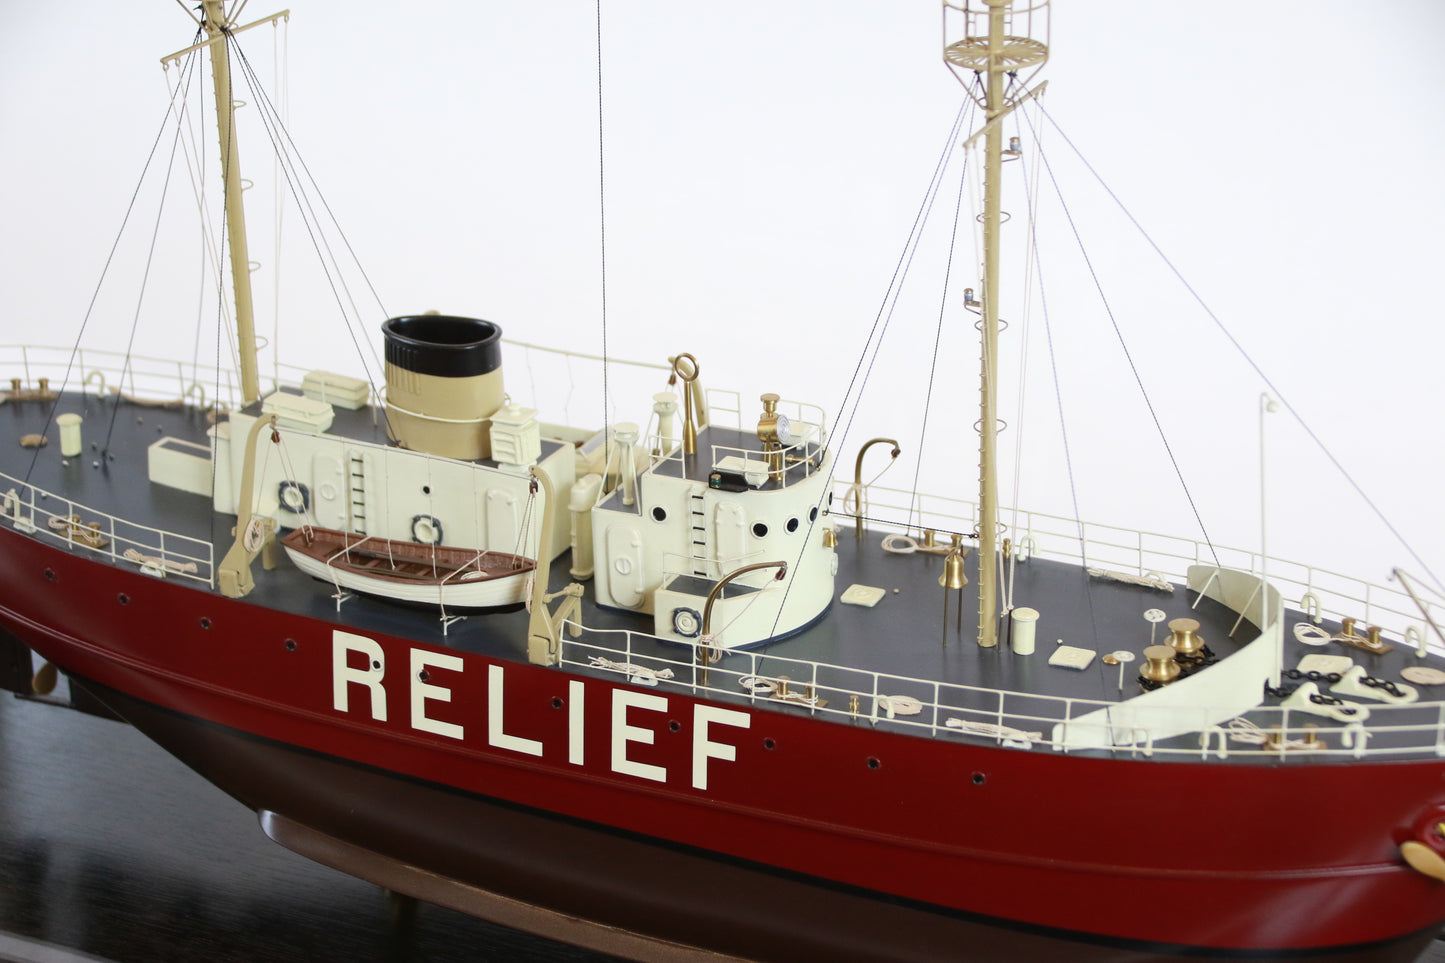 Lightship "Relief" of Oakland, California - Lannan Gallery